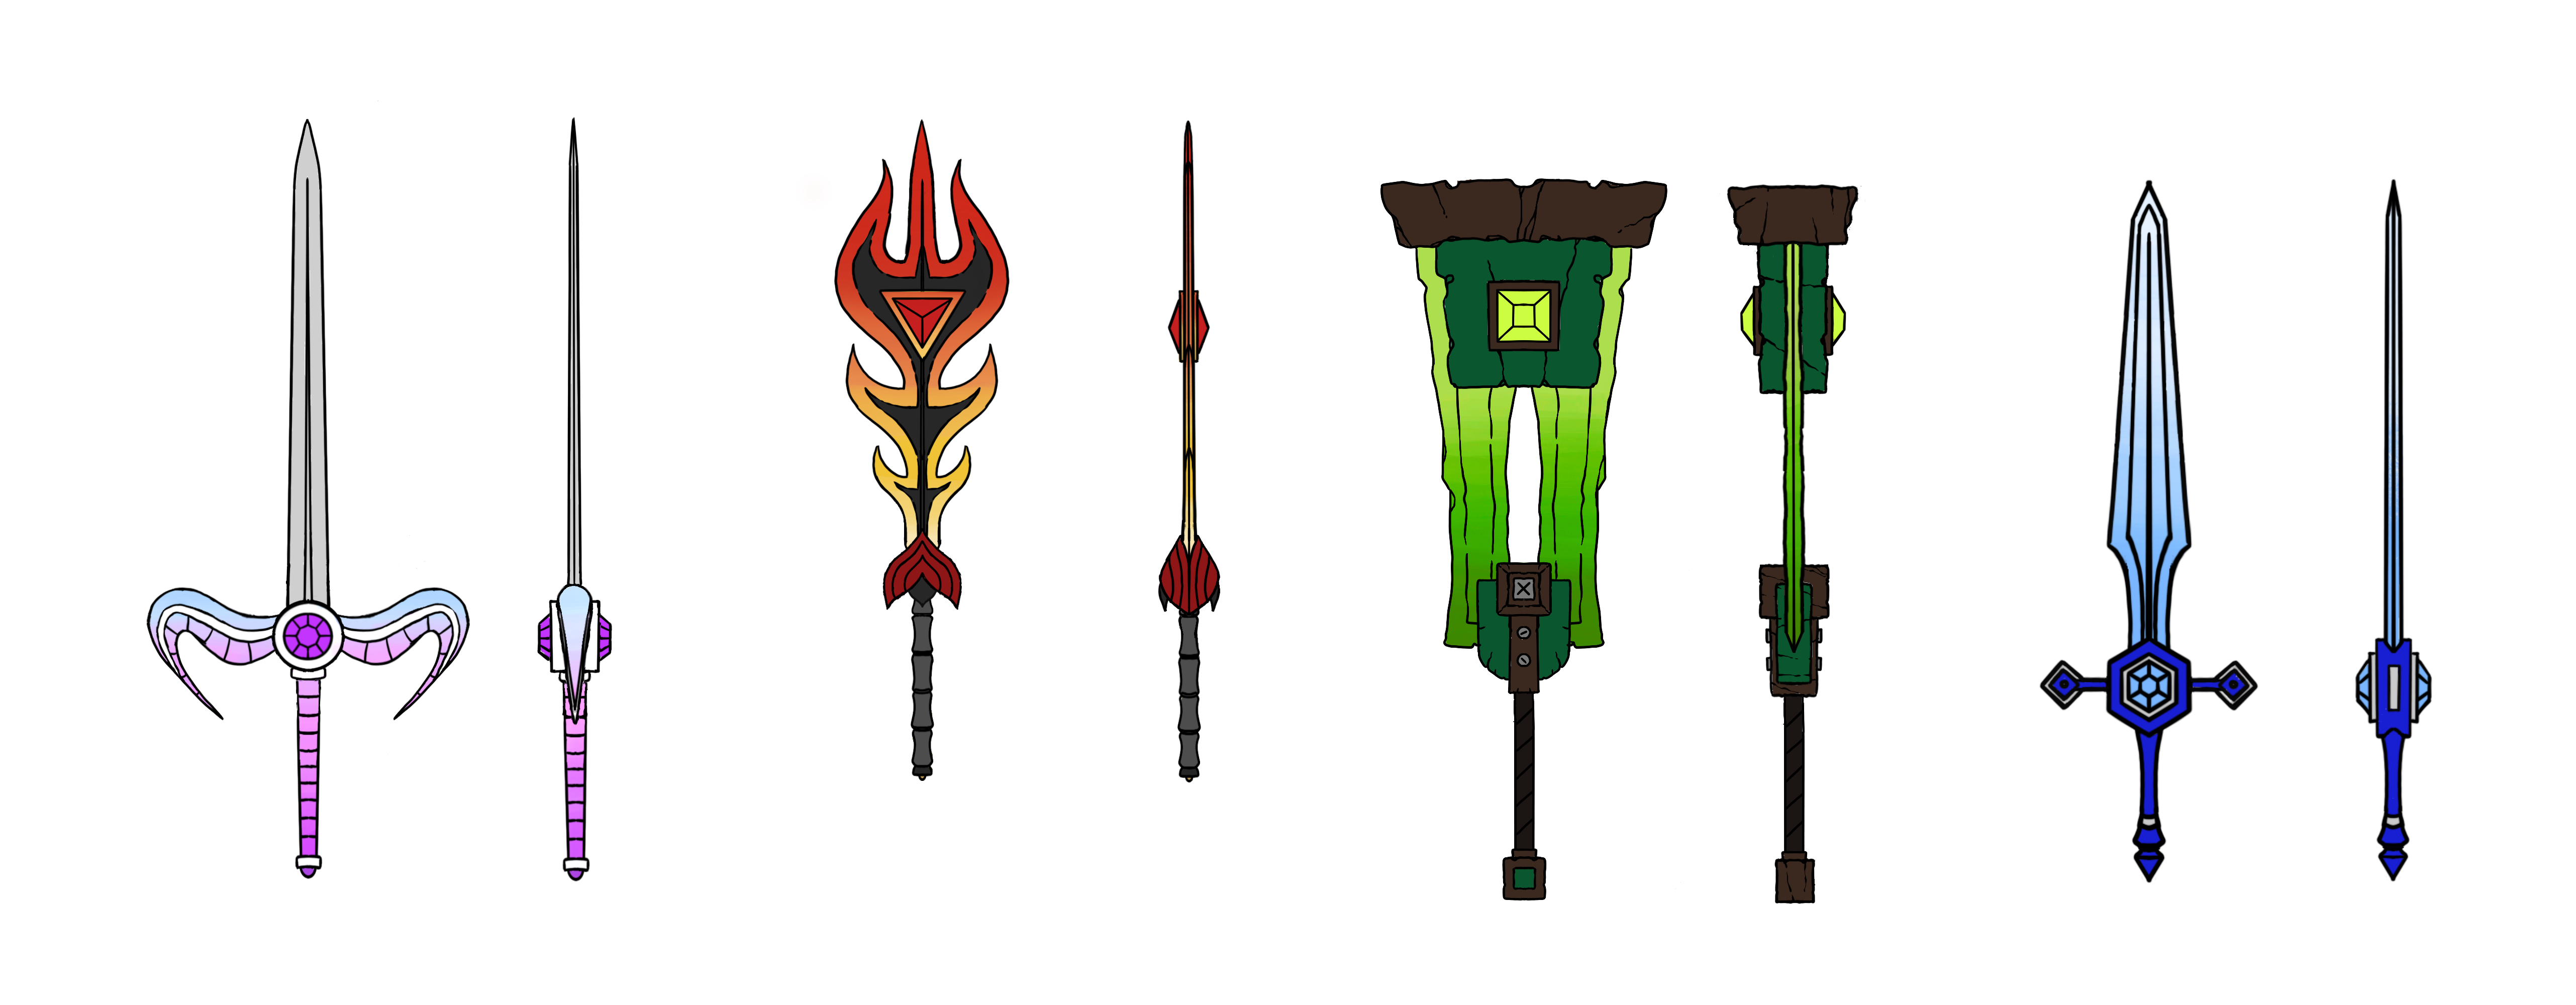 Final Sword Designs